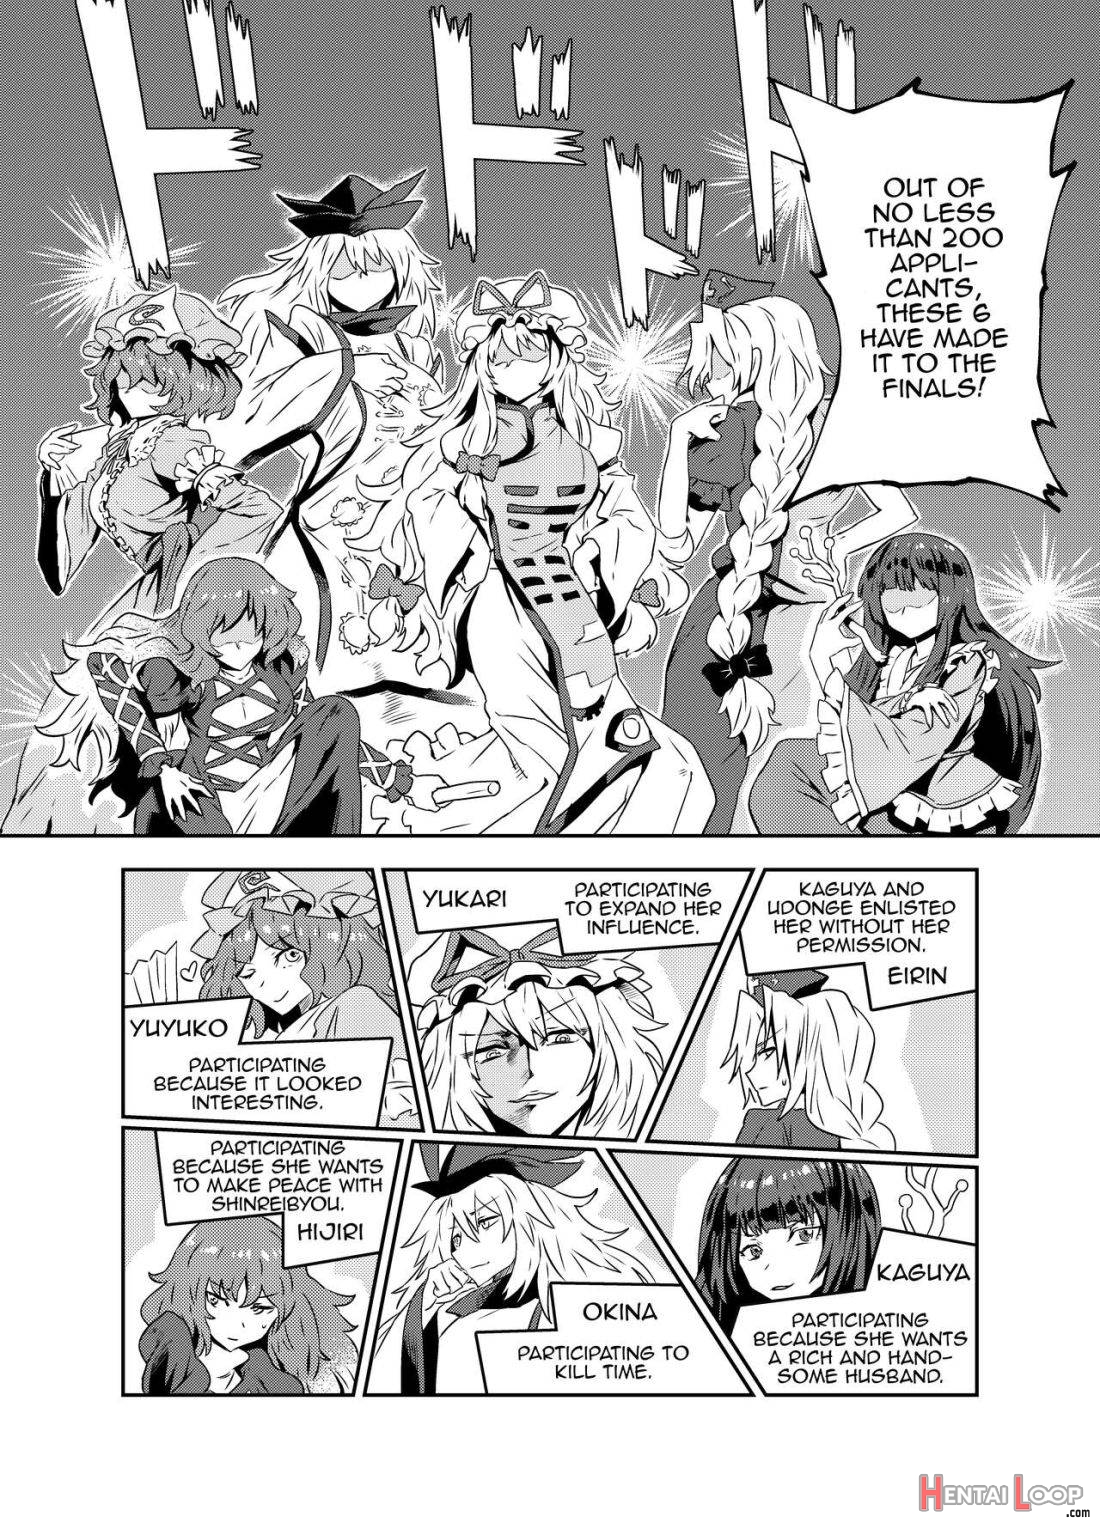 Princess Fight page 5